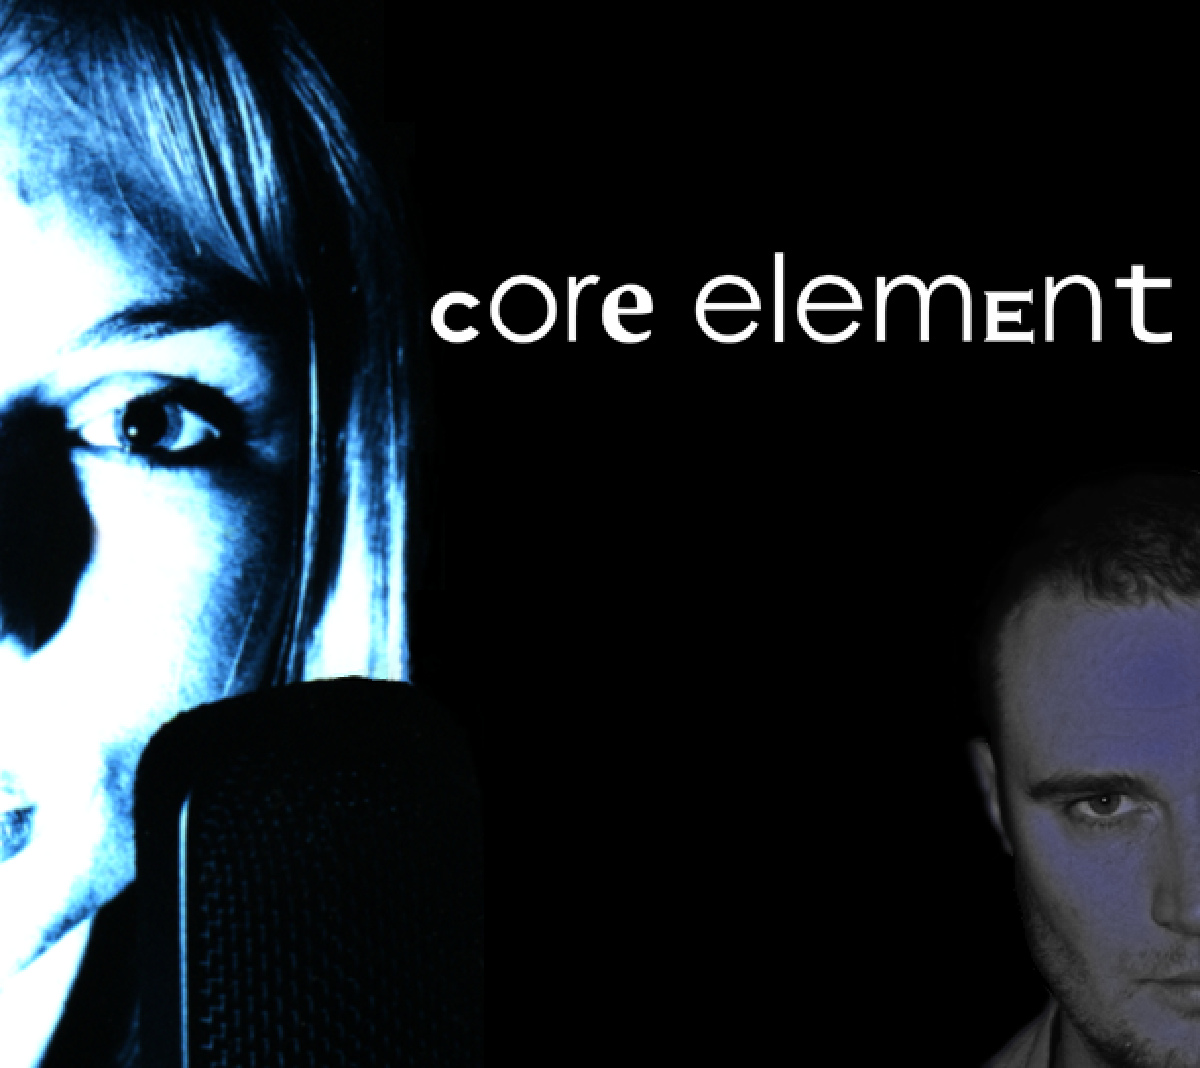 Core Element